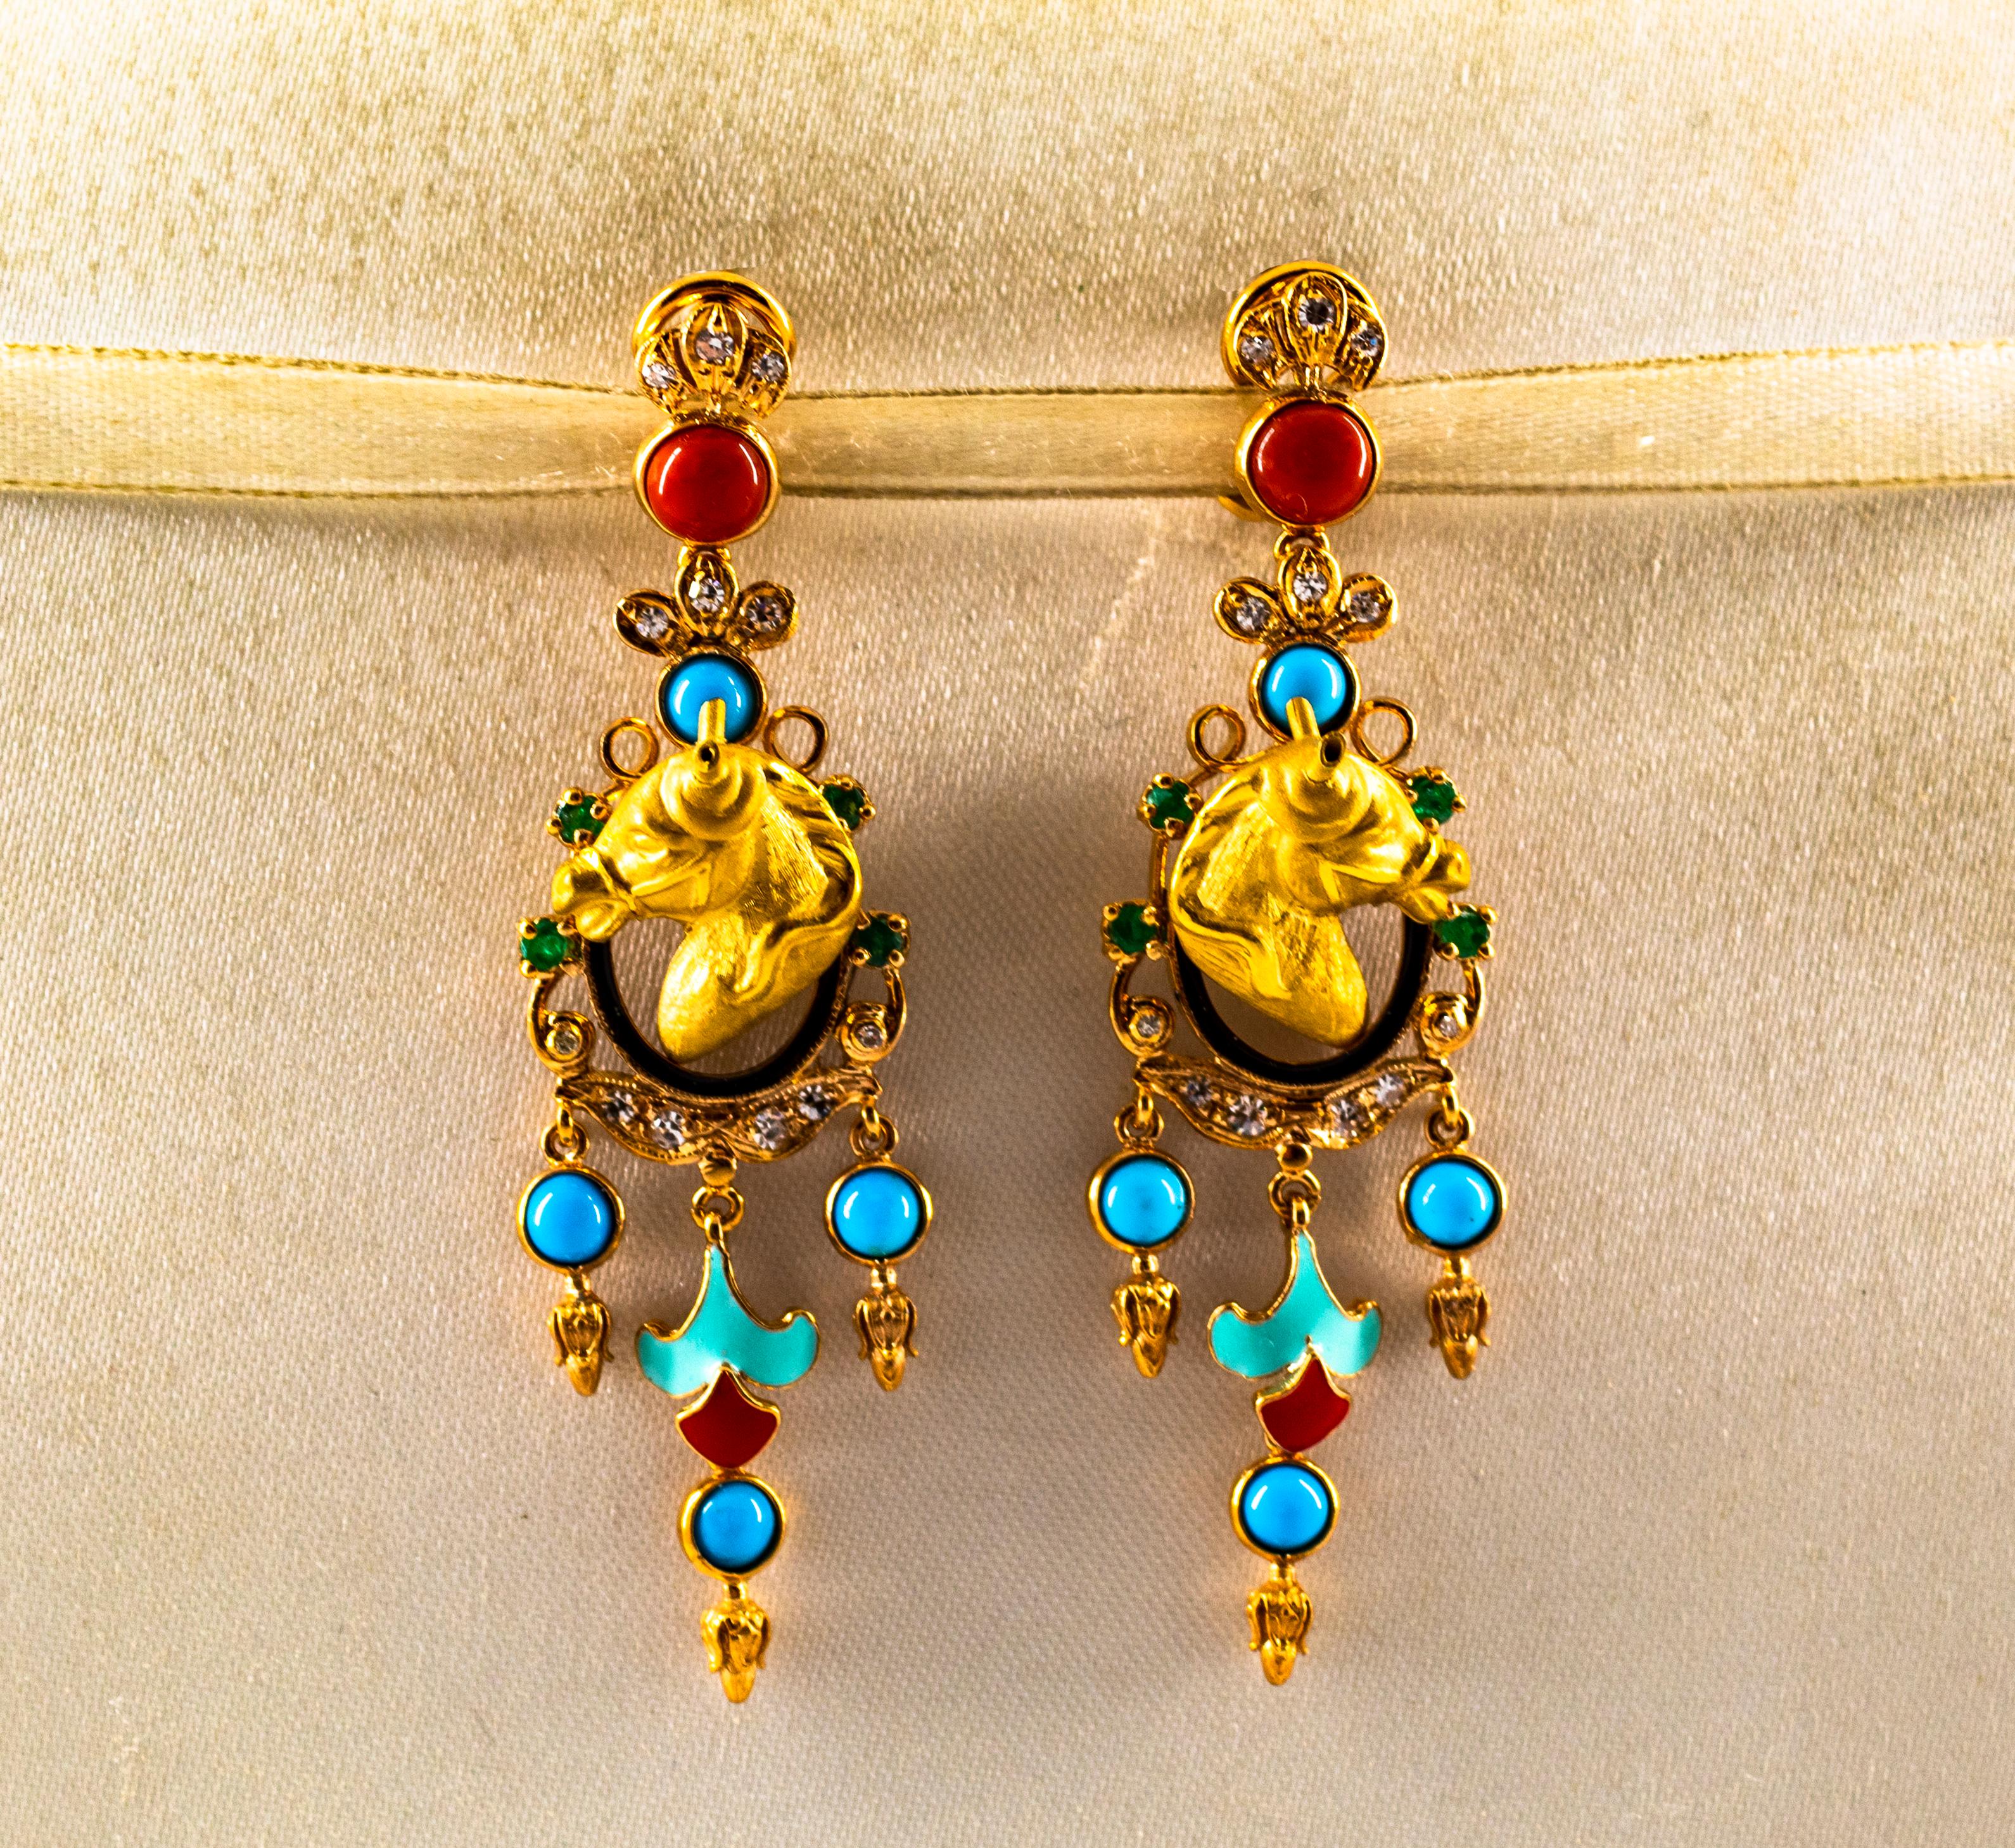 Diese Ohrringe sind aus 9K Gelbgold gefertigt.
Diese Ohrringe haben 0,40 Karat weiße moderne Diamanten im Rundschliff.
Diese Ohrringe bestehen aus 0,30 Karat Smaragden.
Diese Ohrringe haben auch Mittelmeer (Sardinien, Italien) Rote Koralle, Türkis